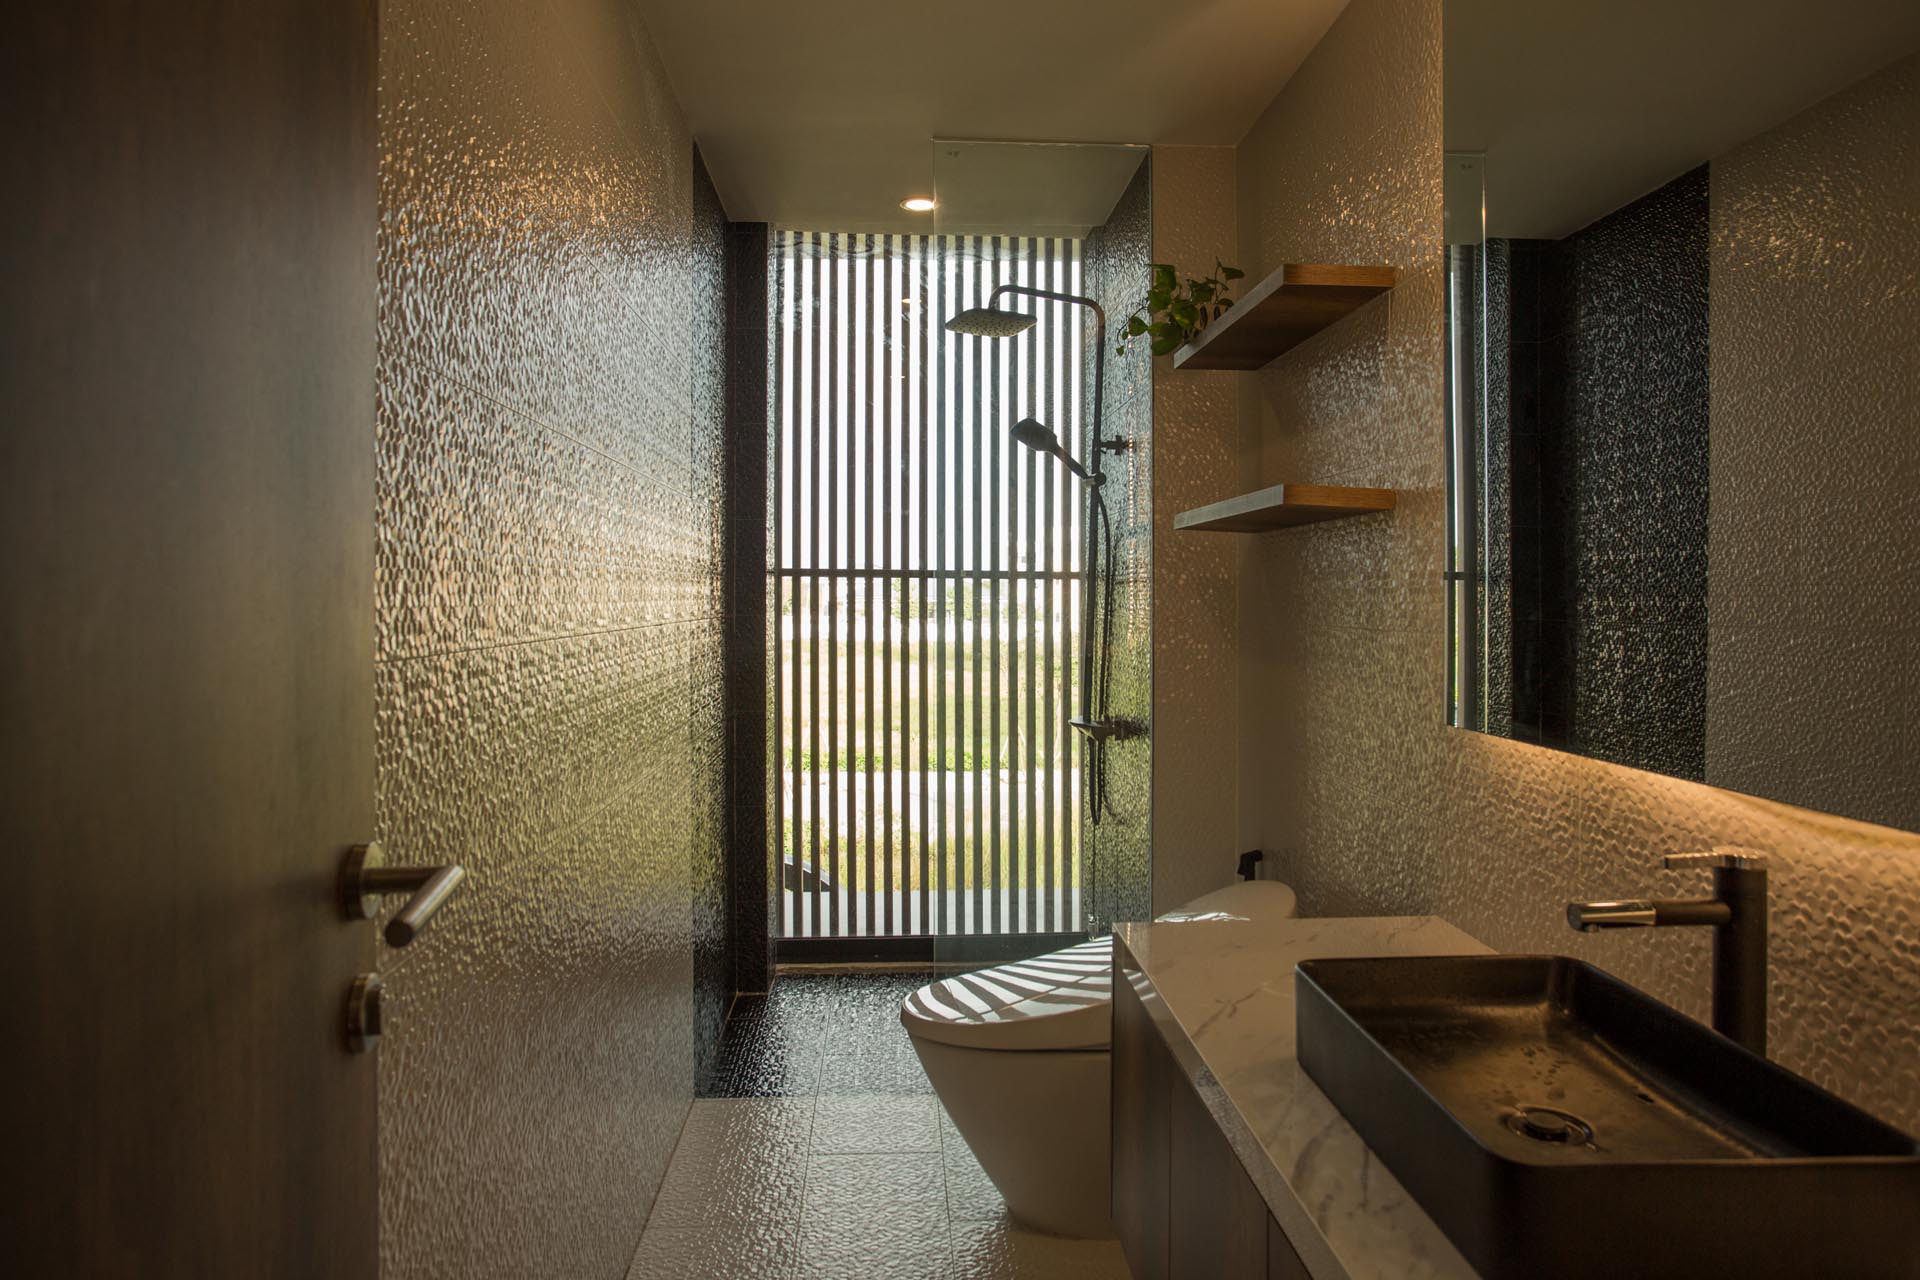 В современной ванной комнате стены и пол покрыты фактурной плиткой, а душевая кабина расположена у окна, откуда открывается вид на улицу.